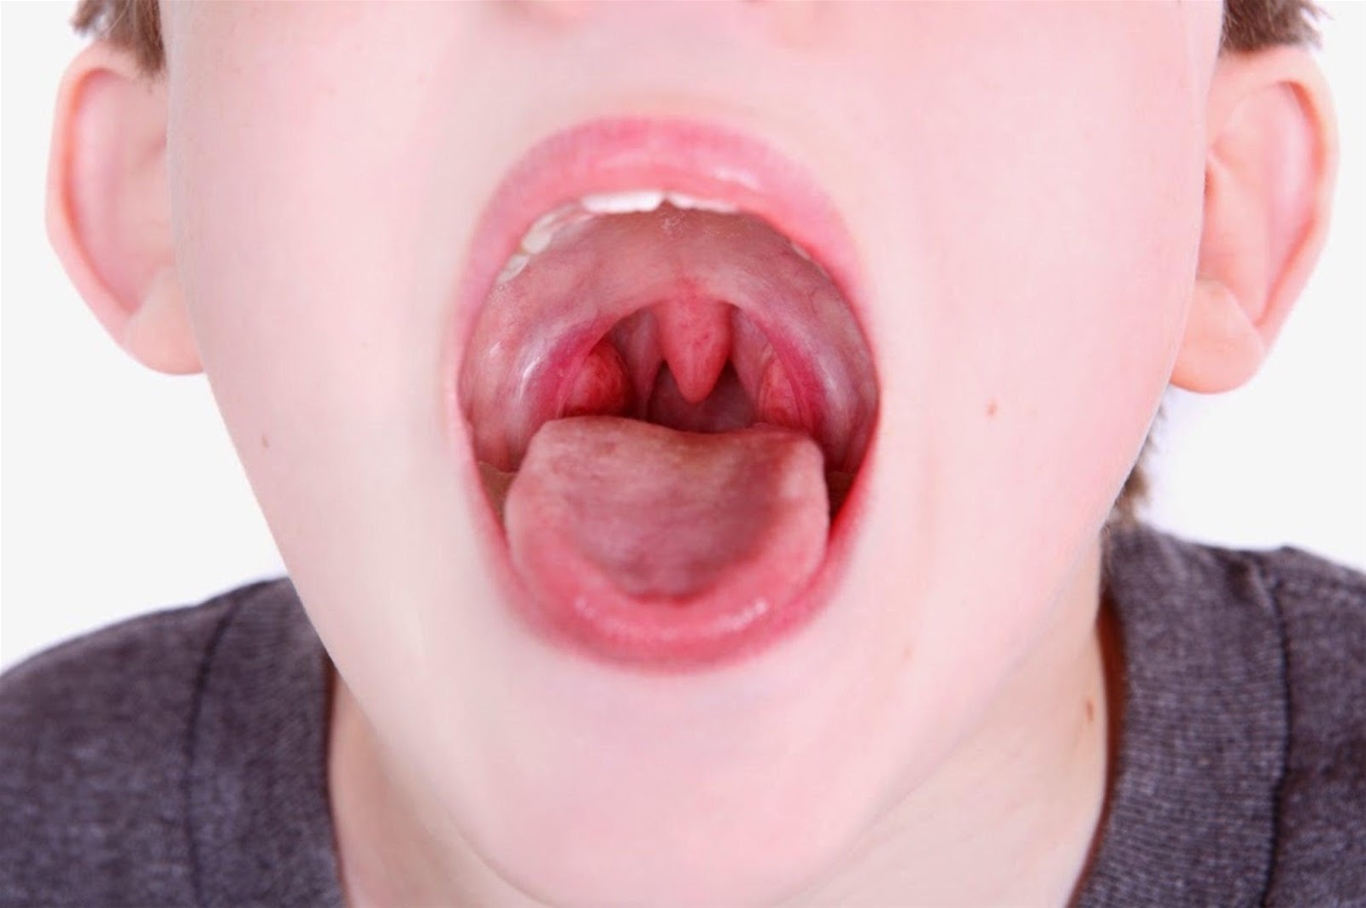 Niêm mạc họng tấy đỏ là một trong những triệu chứng của viêm mũi họng xuất tiết